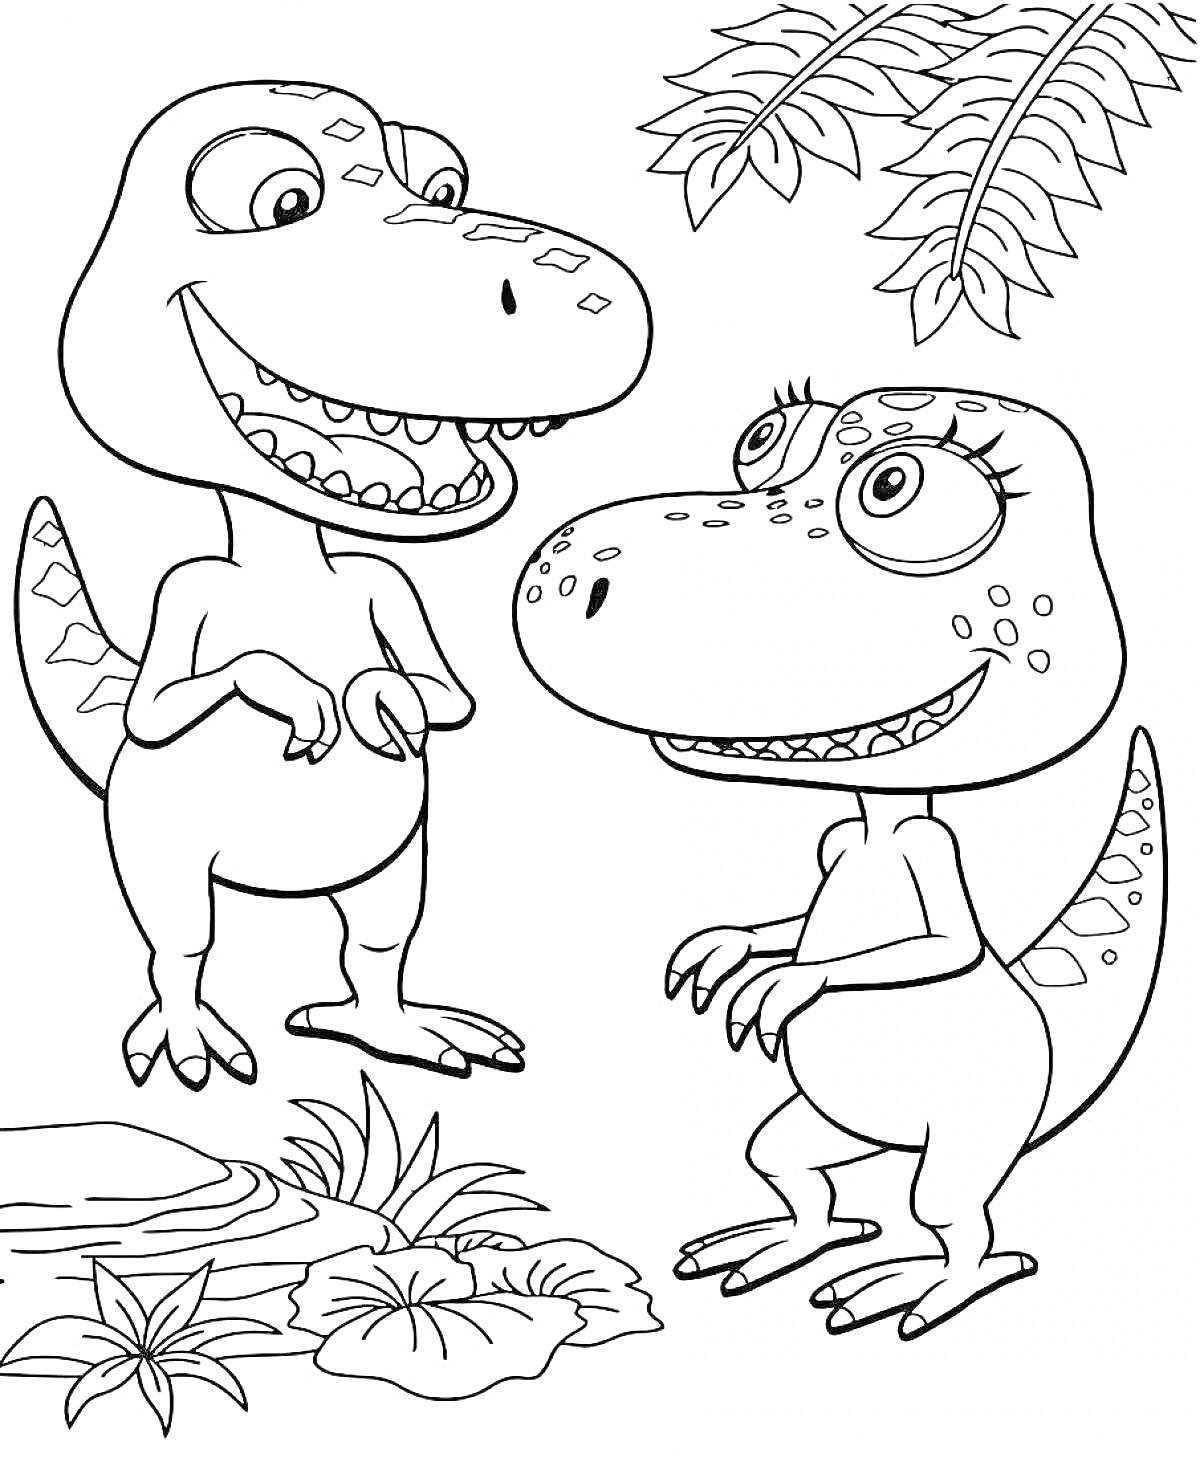 Два динозавра возле водоема с растениями и пальмовыми ветками